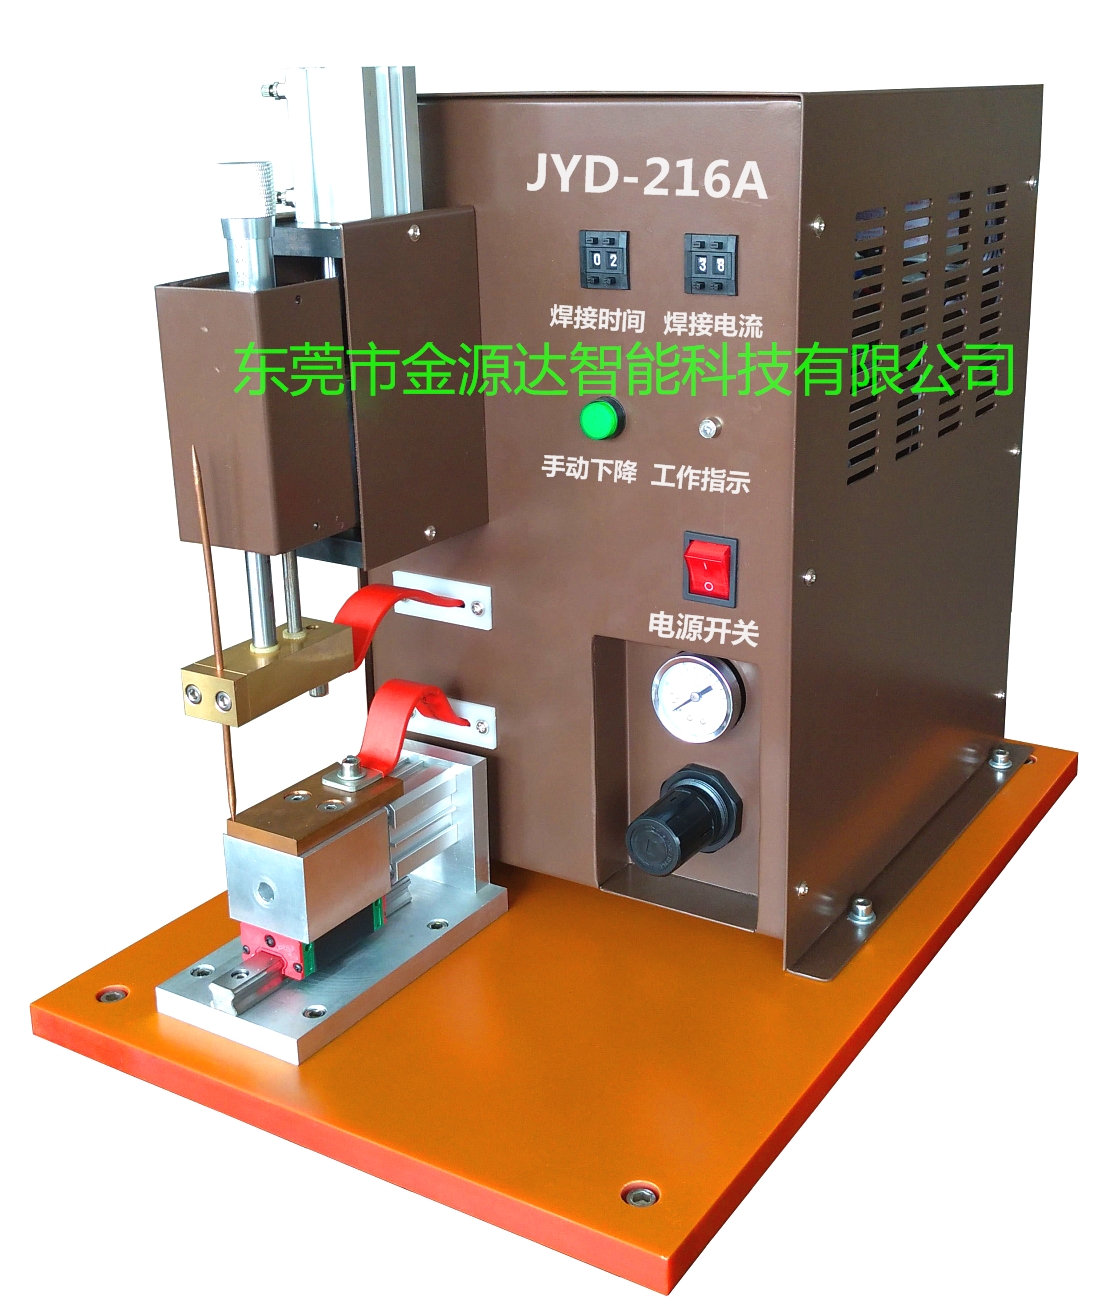 金源达厂家直销 交流精密点焊机 JYD-216A